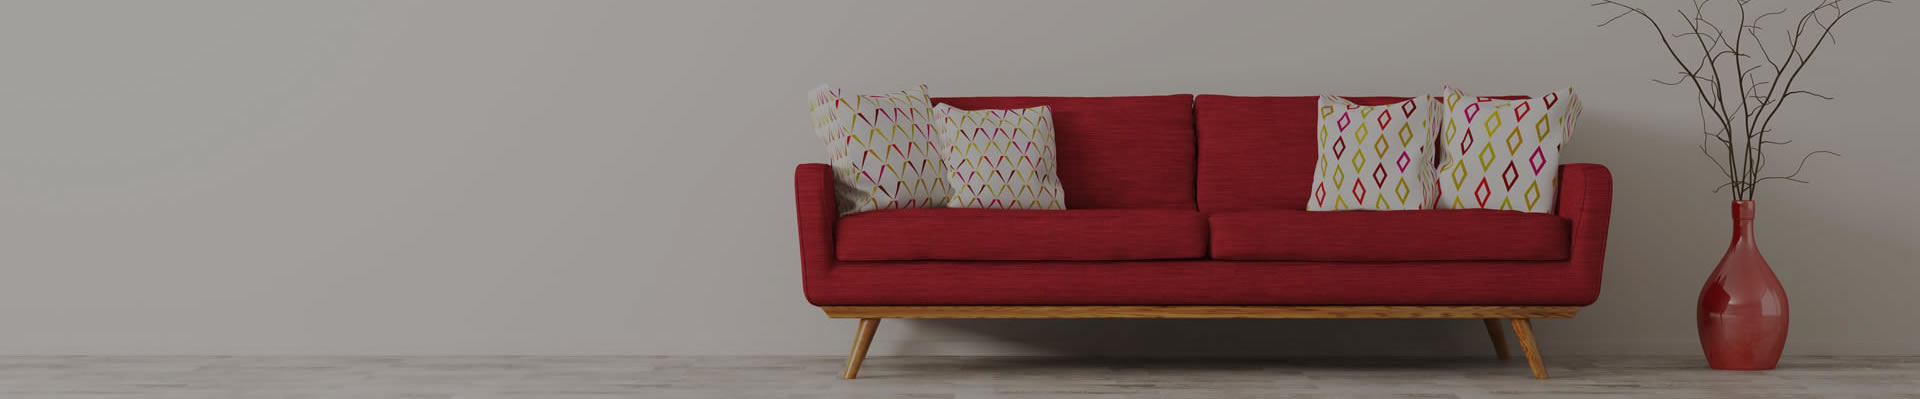 Crvena sofa sa belim jastucima pored koje je crvena vaza